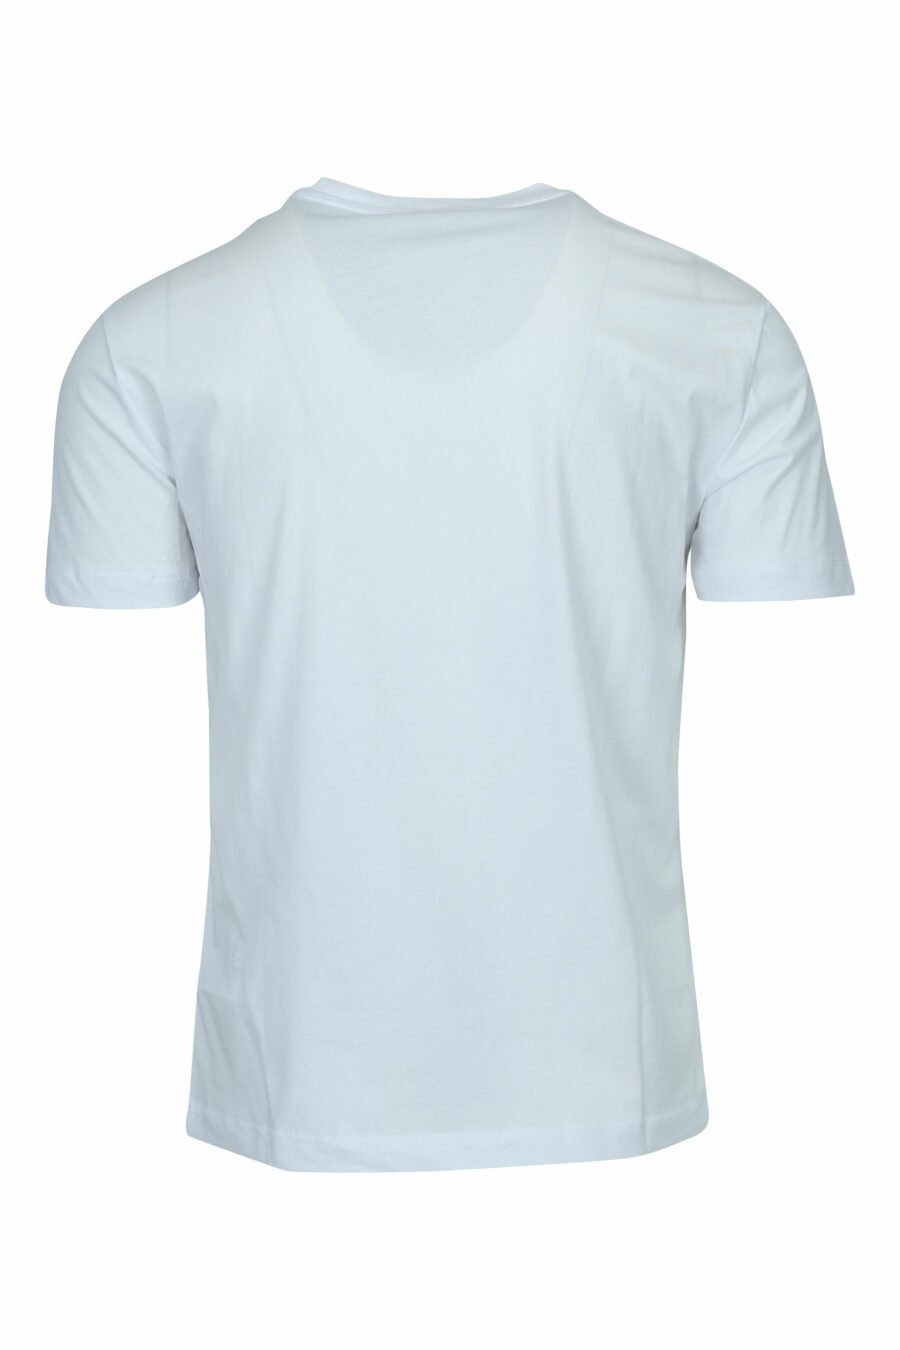 T-shirt blanc avec maxilogo "lux identity" en dégradé - 8057970673118 1